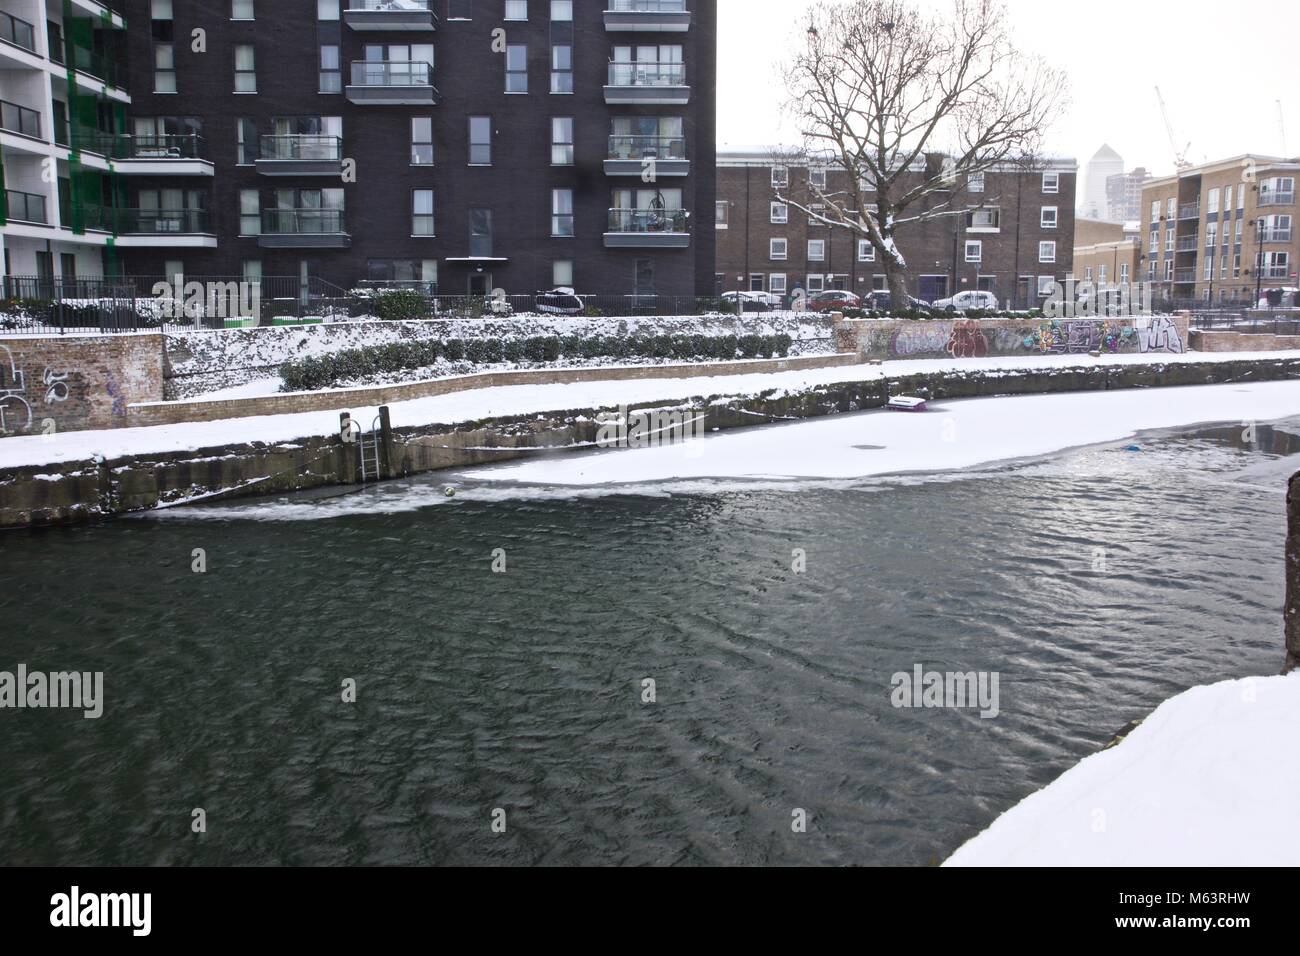 London England Vereinigtes Königreich: 28. Februar 2018: Ein East London urban Kanal teilweise gefroren während der treffend benannten "Tier aus dem Osten' Arktis Wetter, dass das Vereinigte Königreich JosefMills/Alamy Leben Nachrichten eingehüllt hat Stockfoto